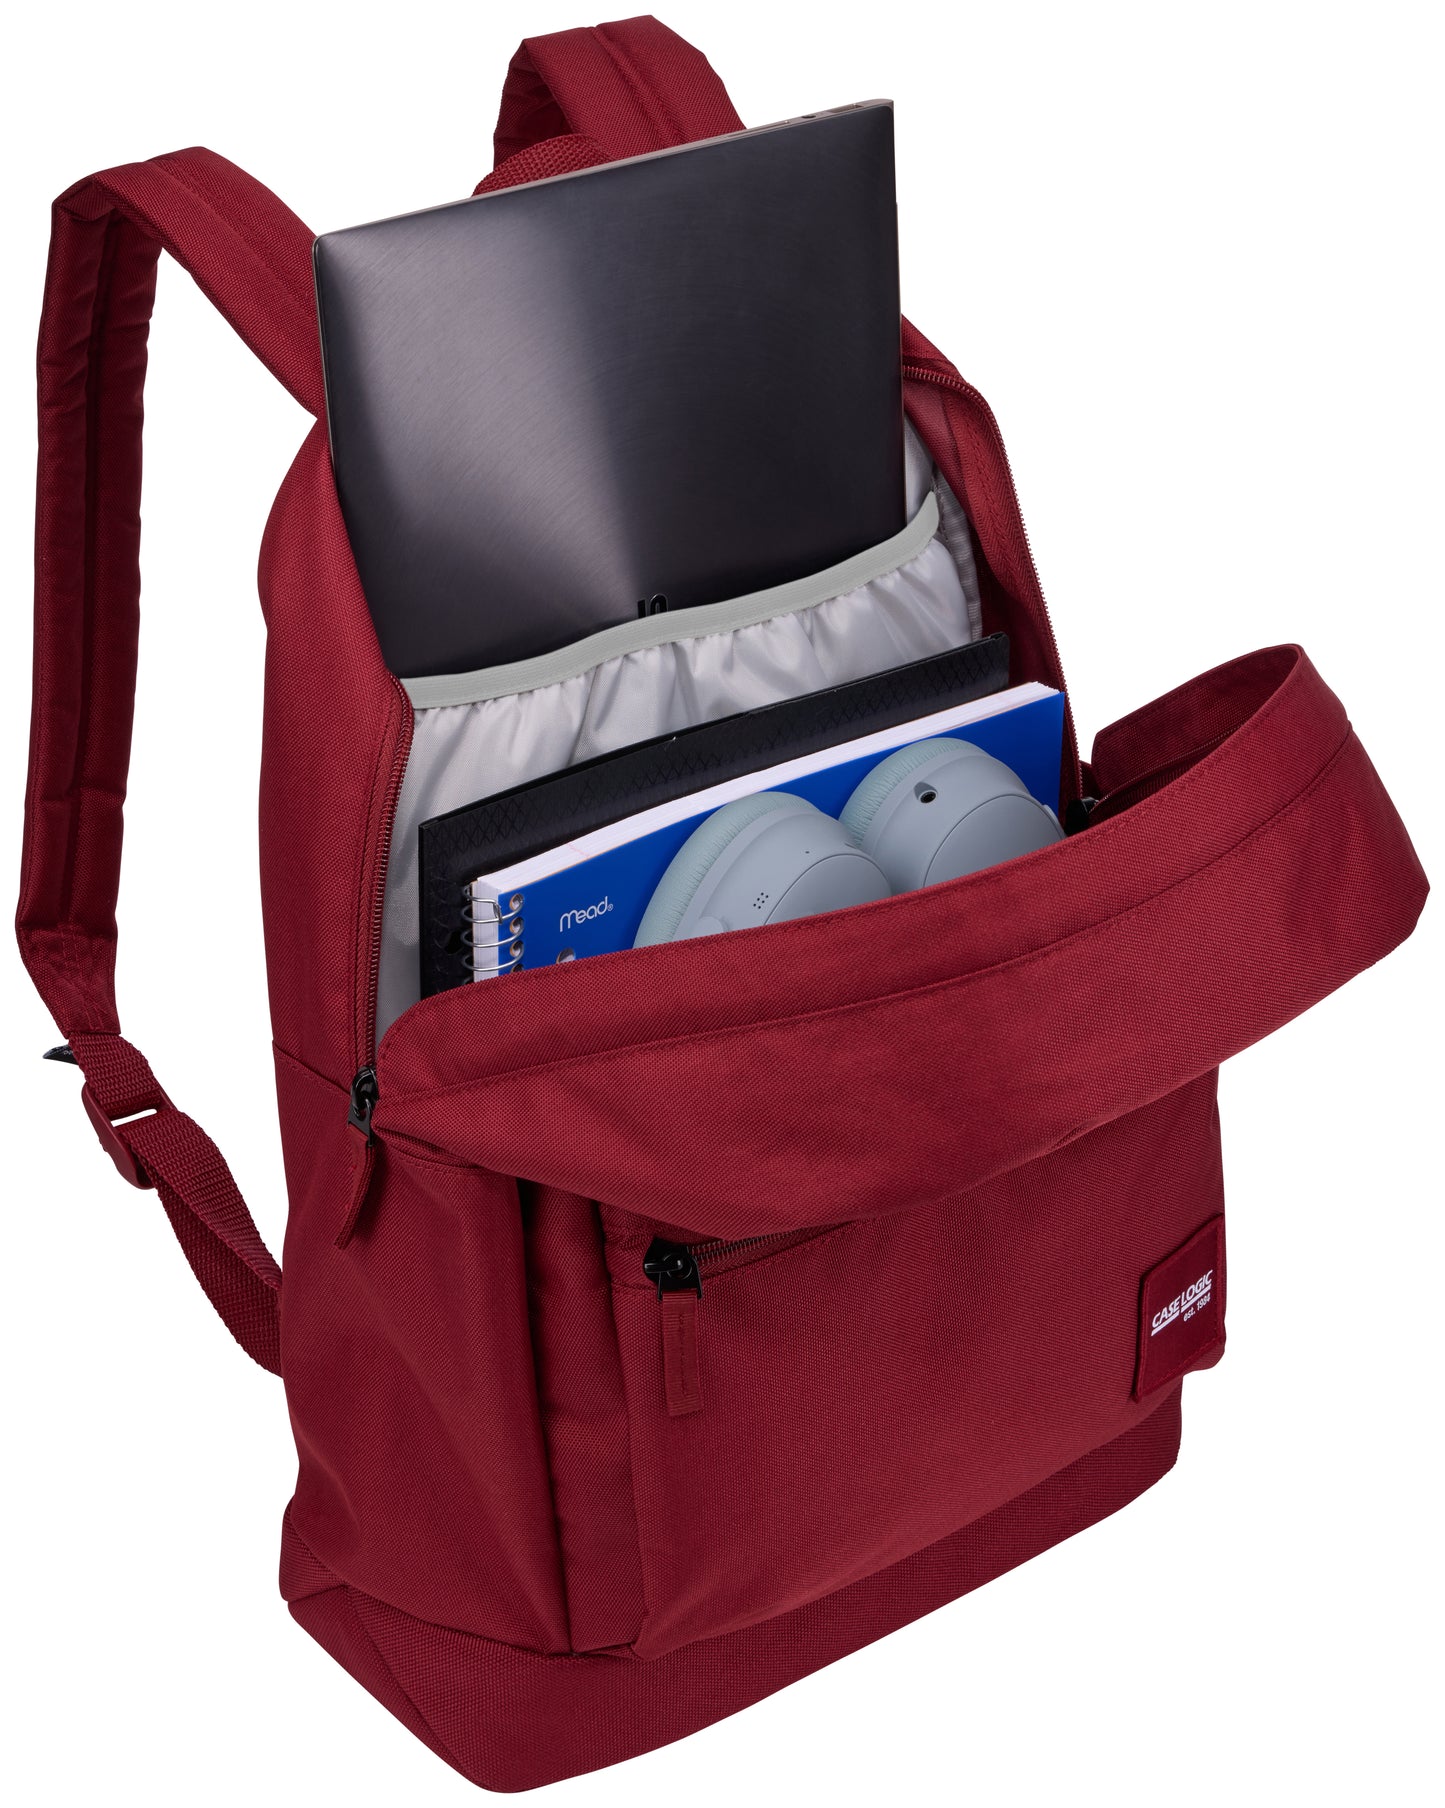 Campus 24L Backpack 15.6" Case Logic CCAM-1216 Red